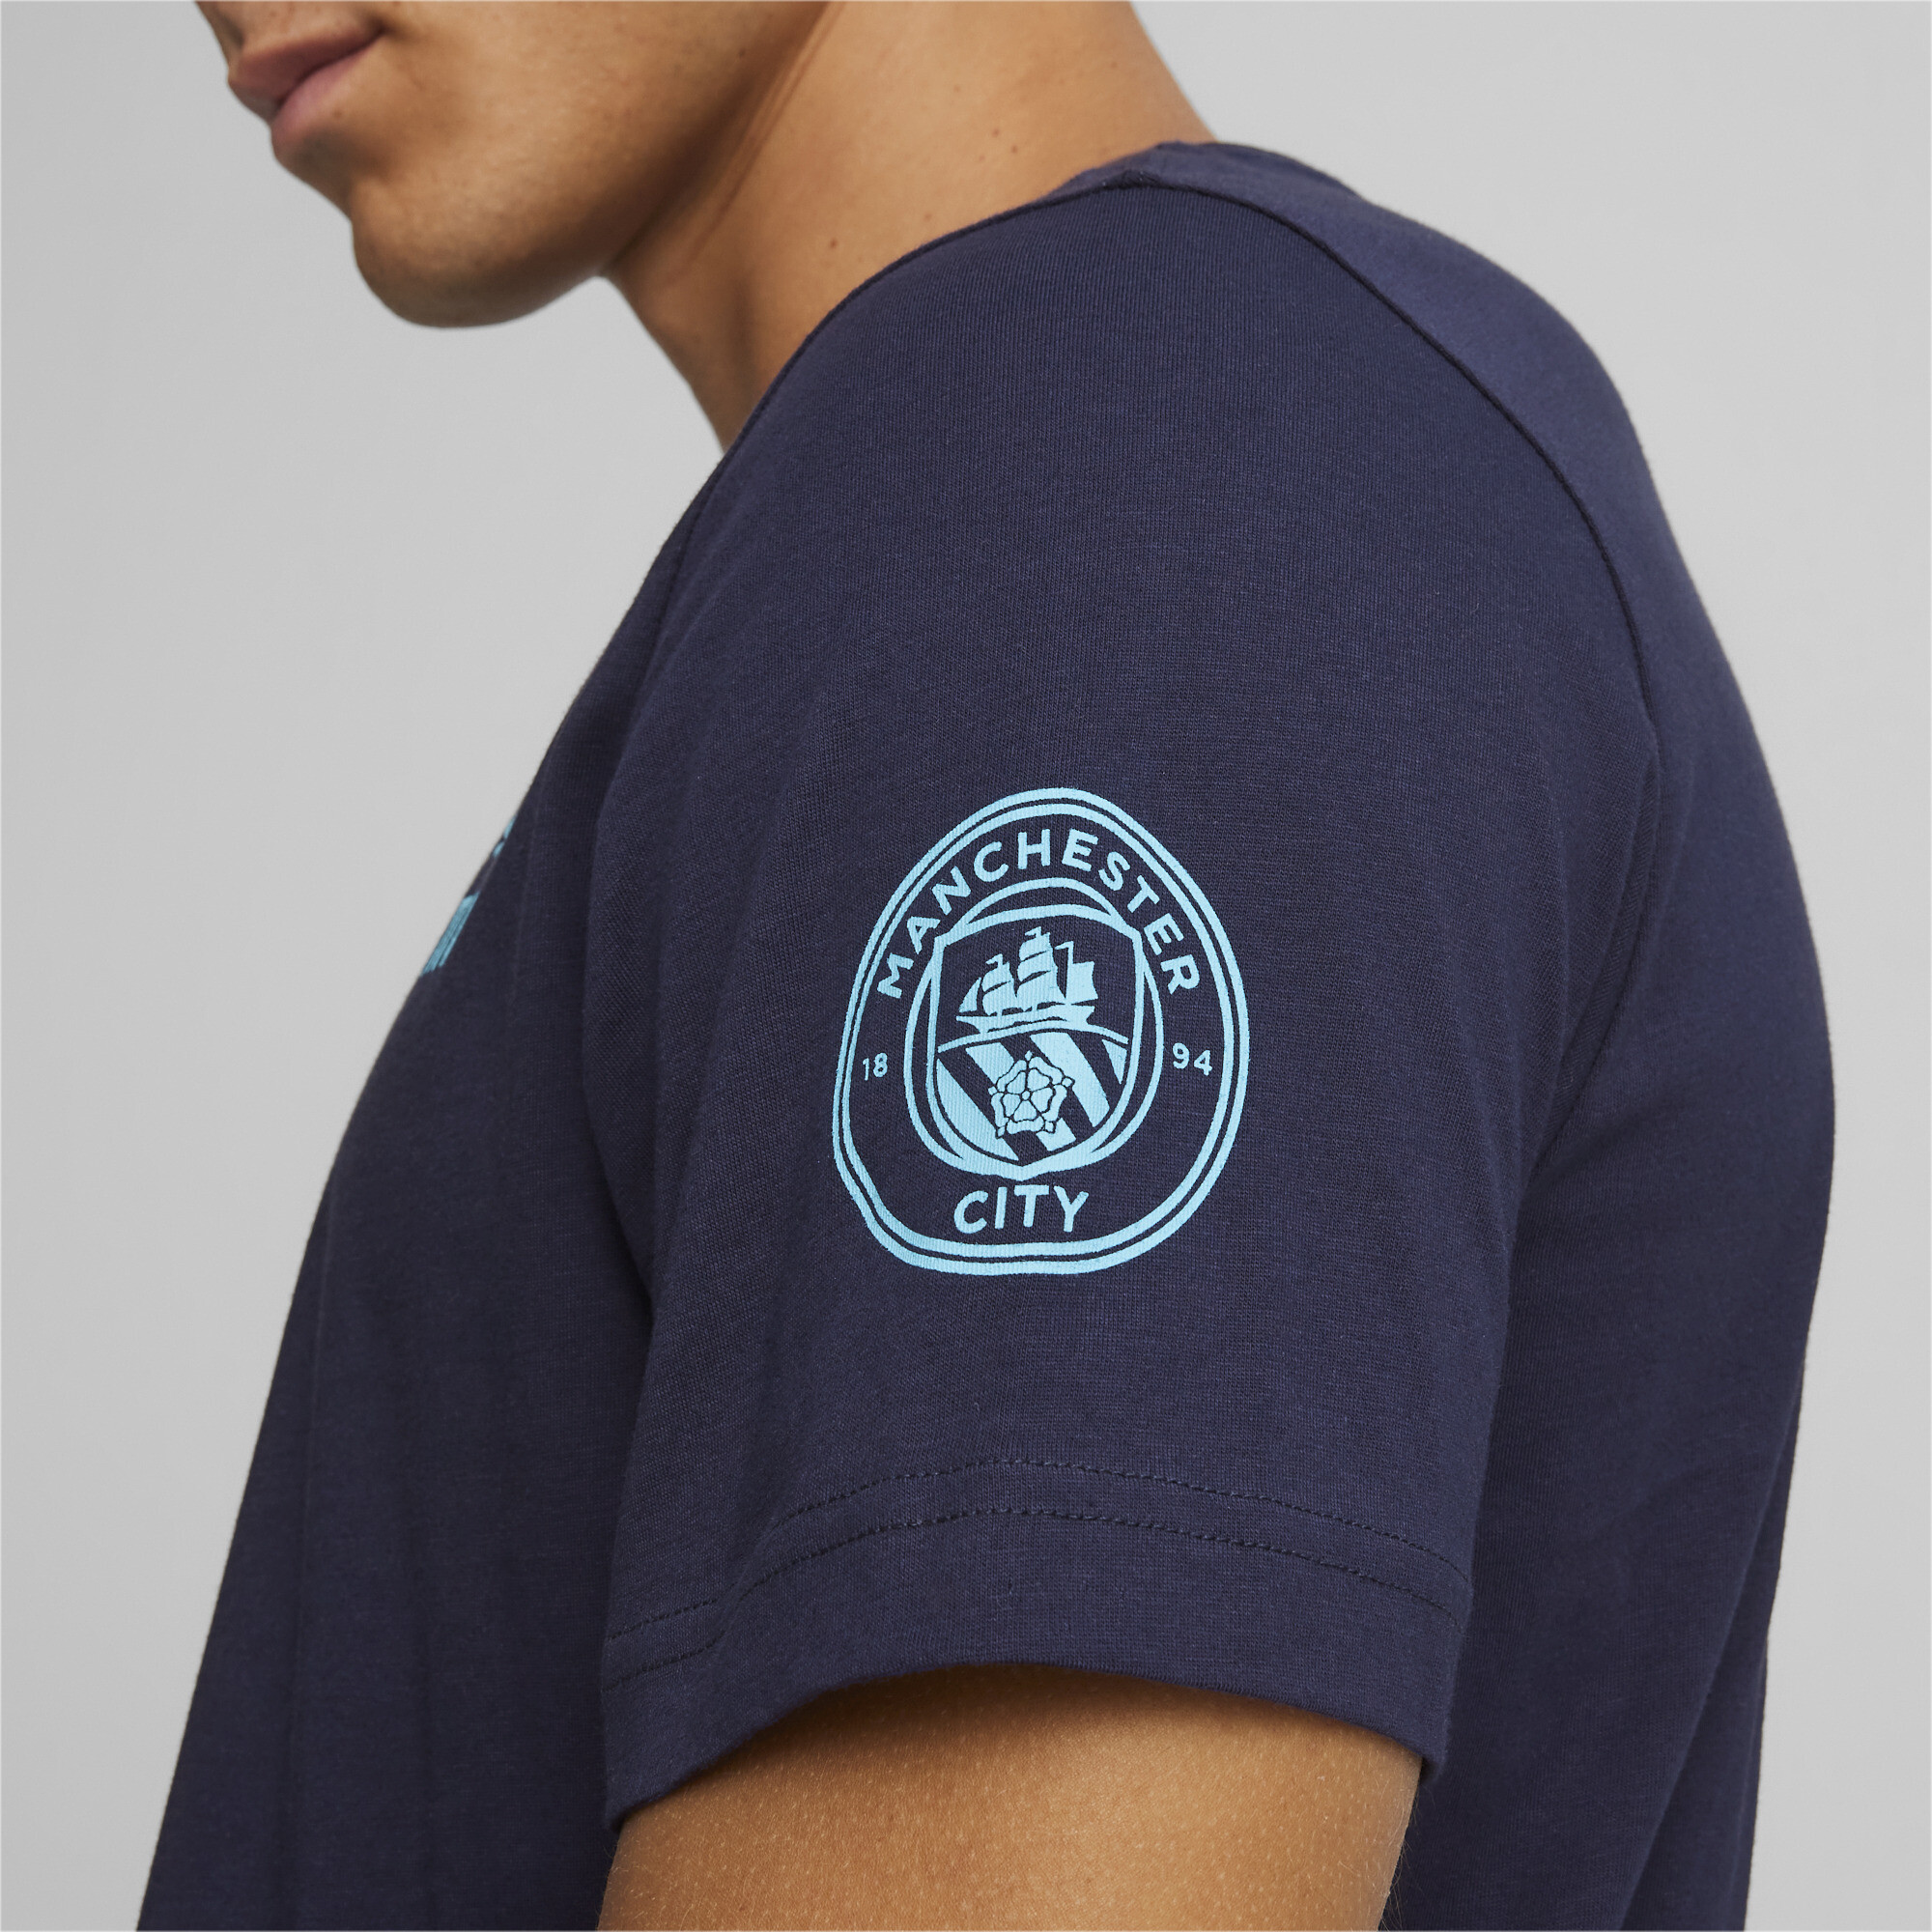 Men's Puma Manchester City Ftblicons T-Shirt, Blue, Size M, Sport